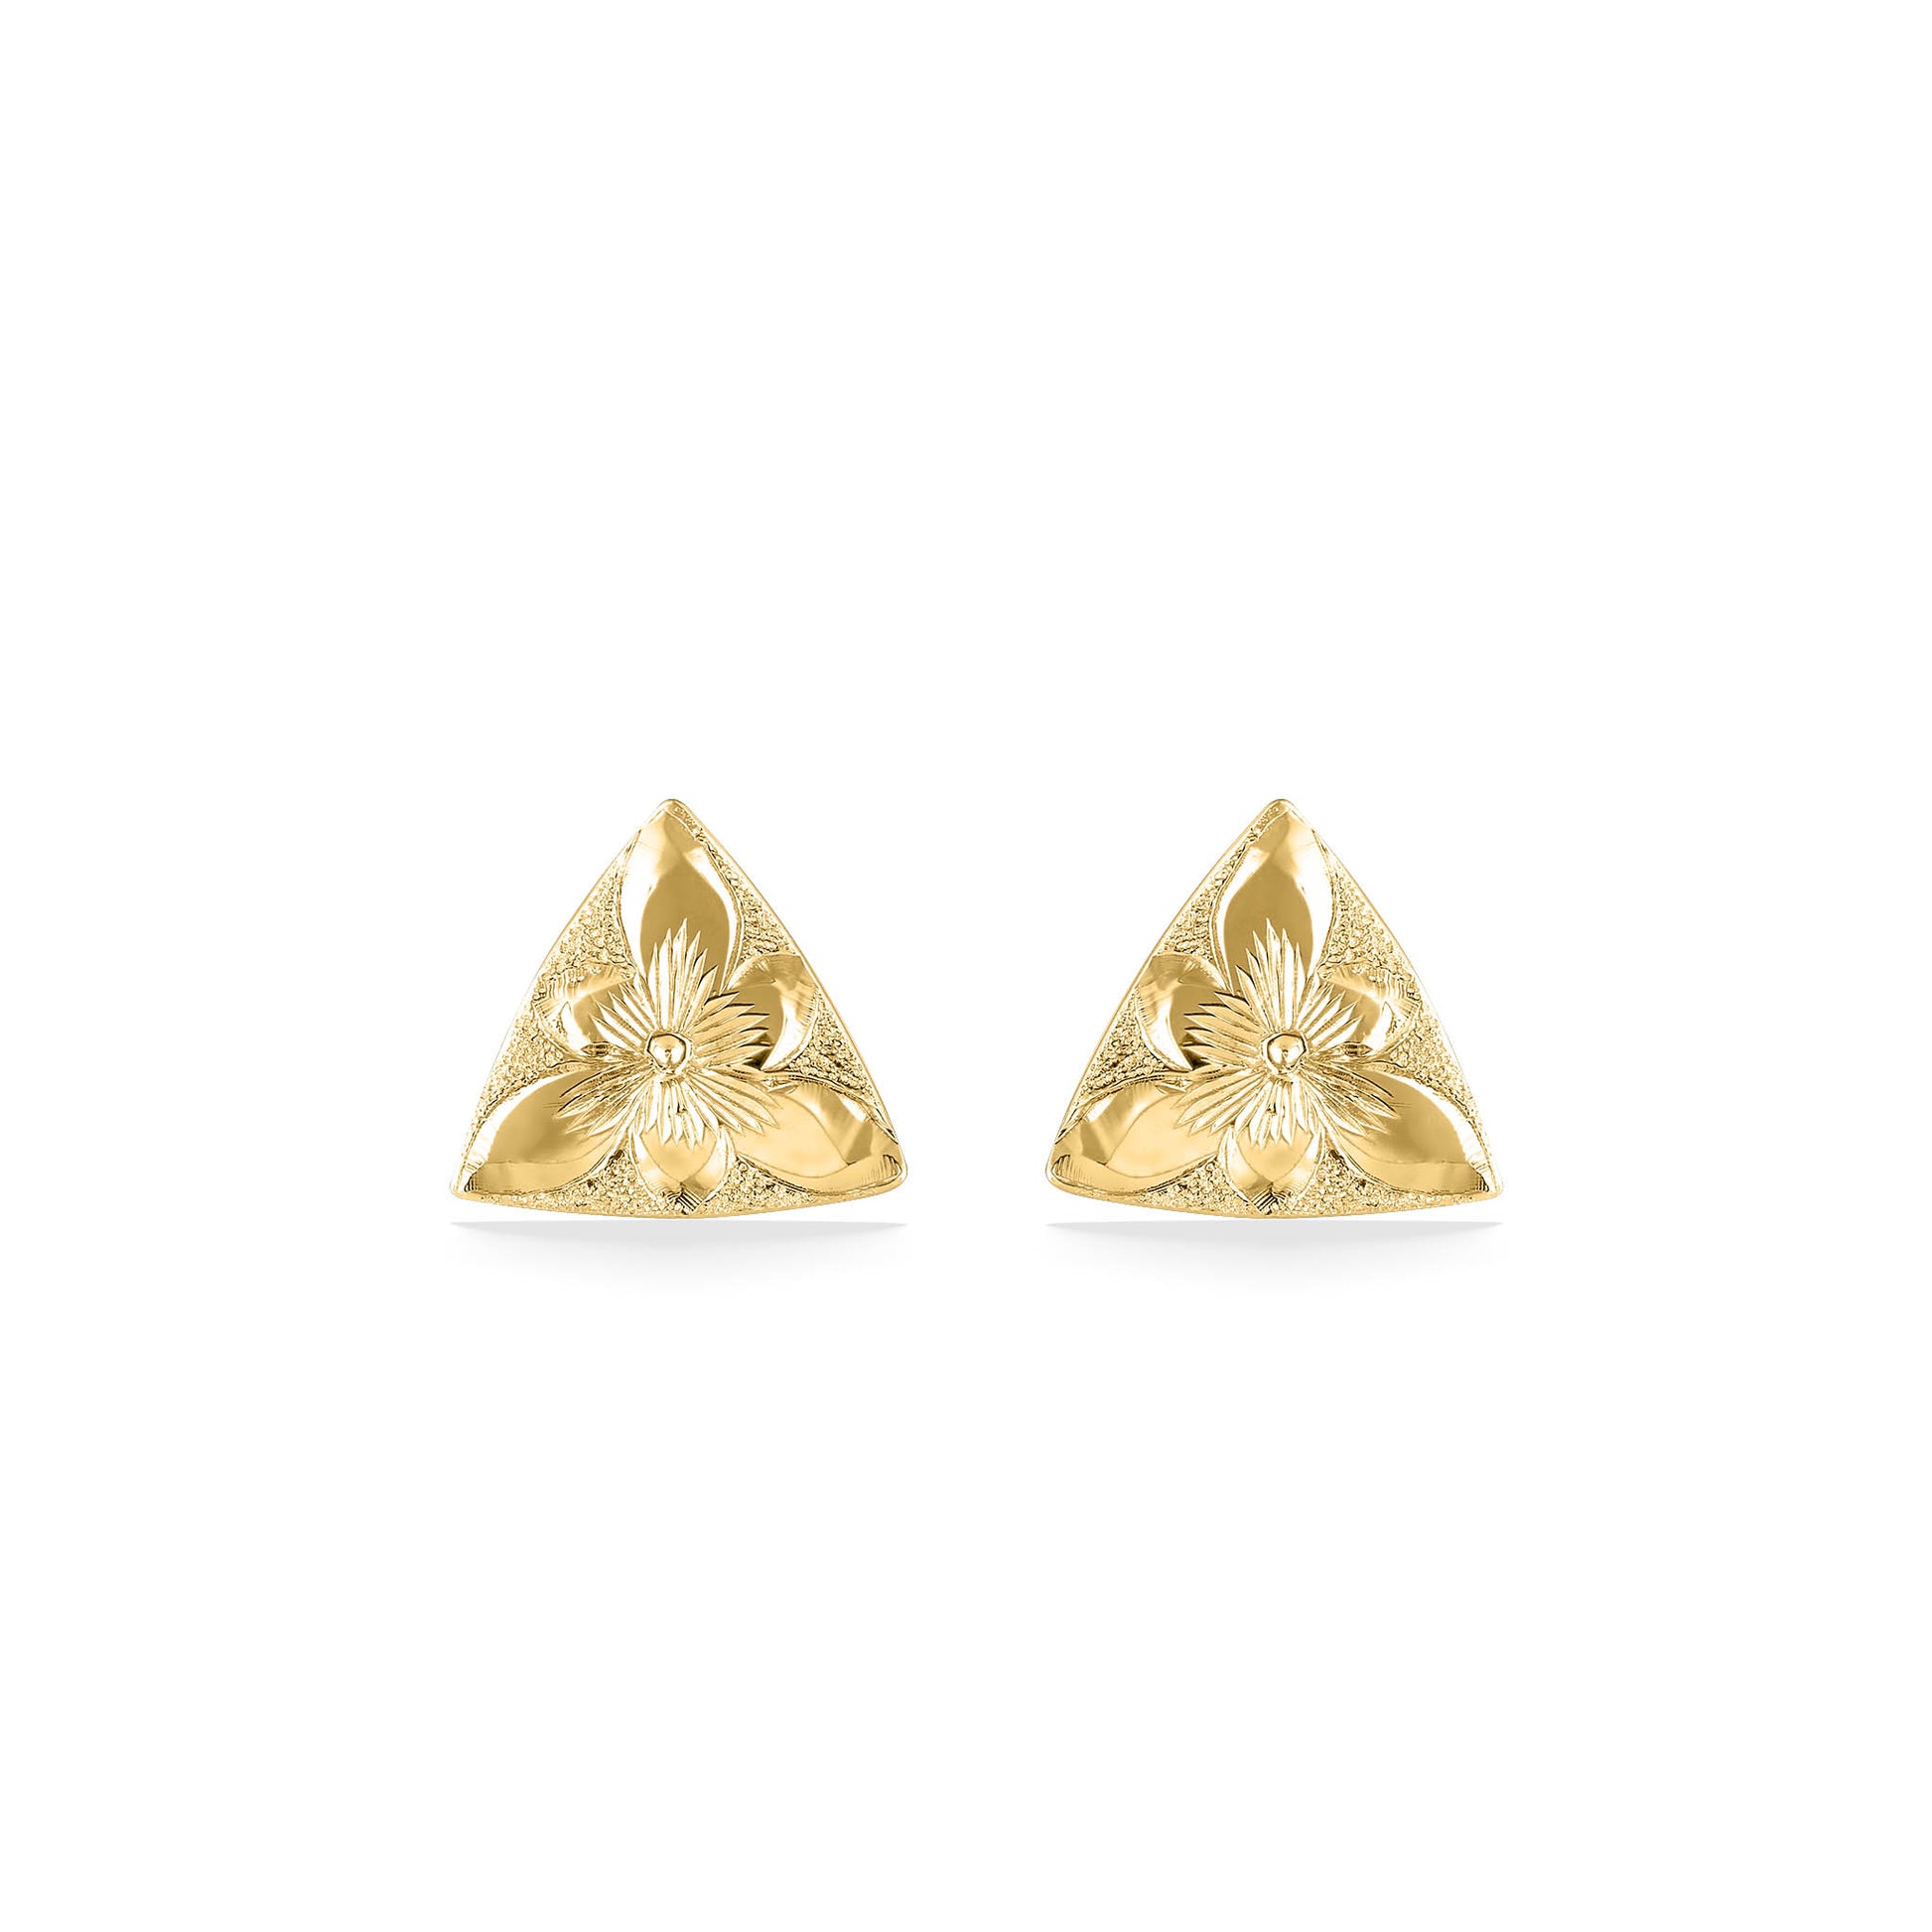 44441 - 14K Yellow Gold - Hawaiian Heirloom Triangle Stud Earrings